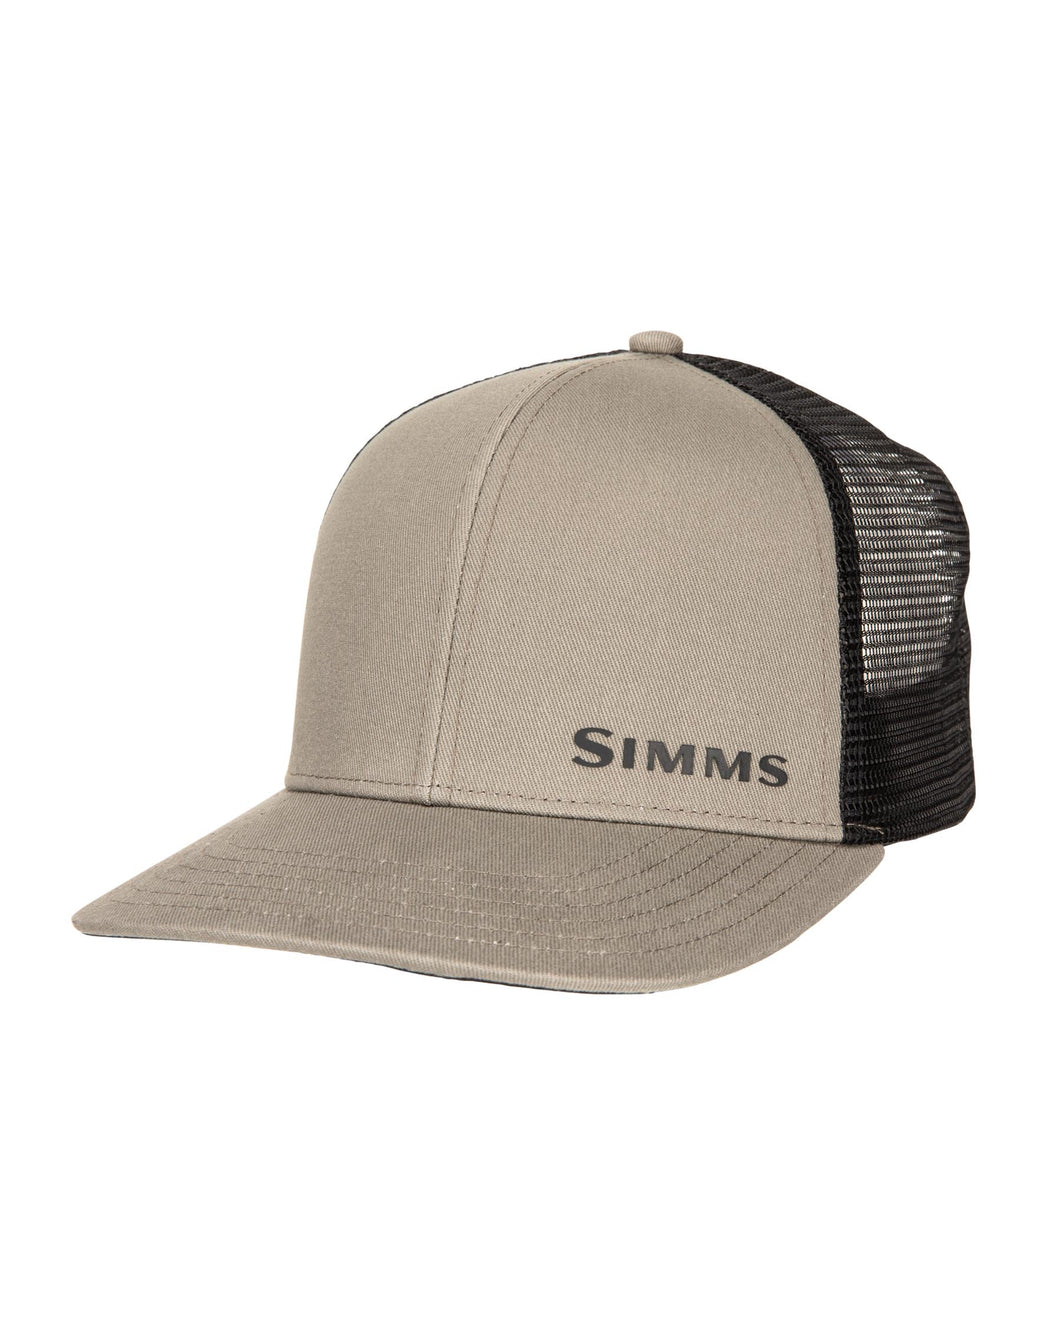 Simms ID Trucker Hats